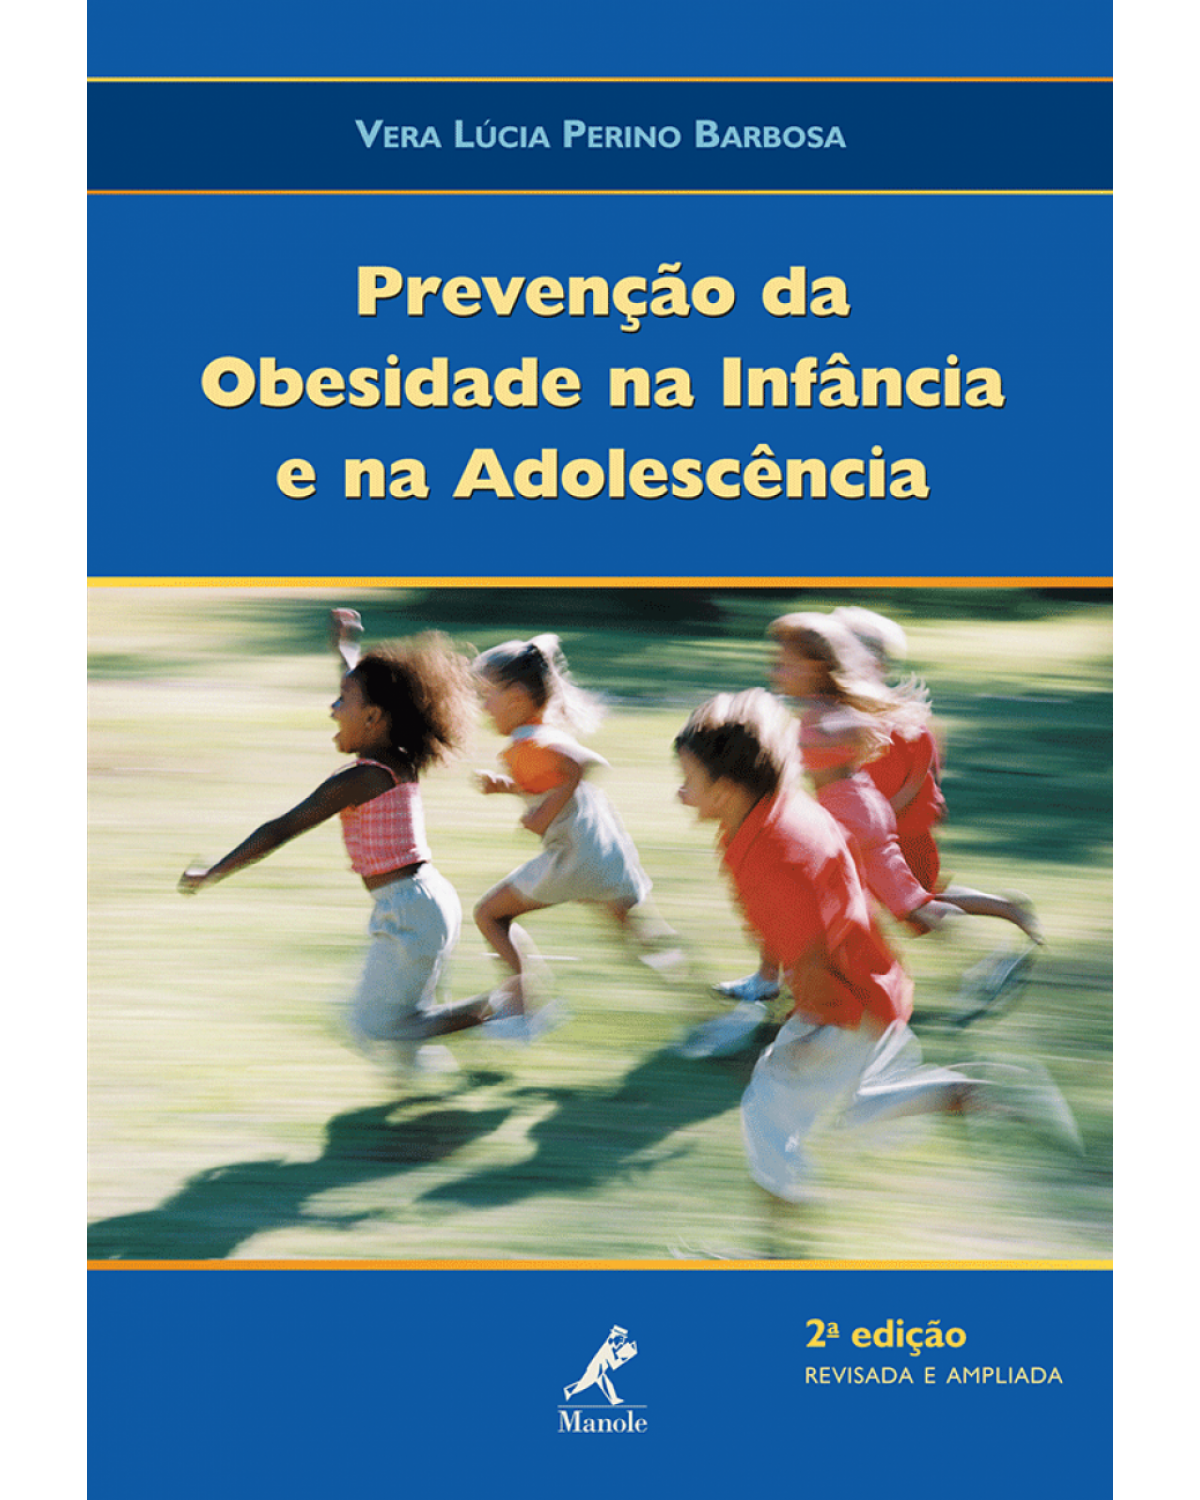 Prevenção da obesidade na infância e na adolescência - 2ª Edição | 2008